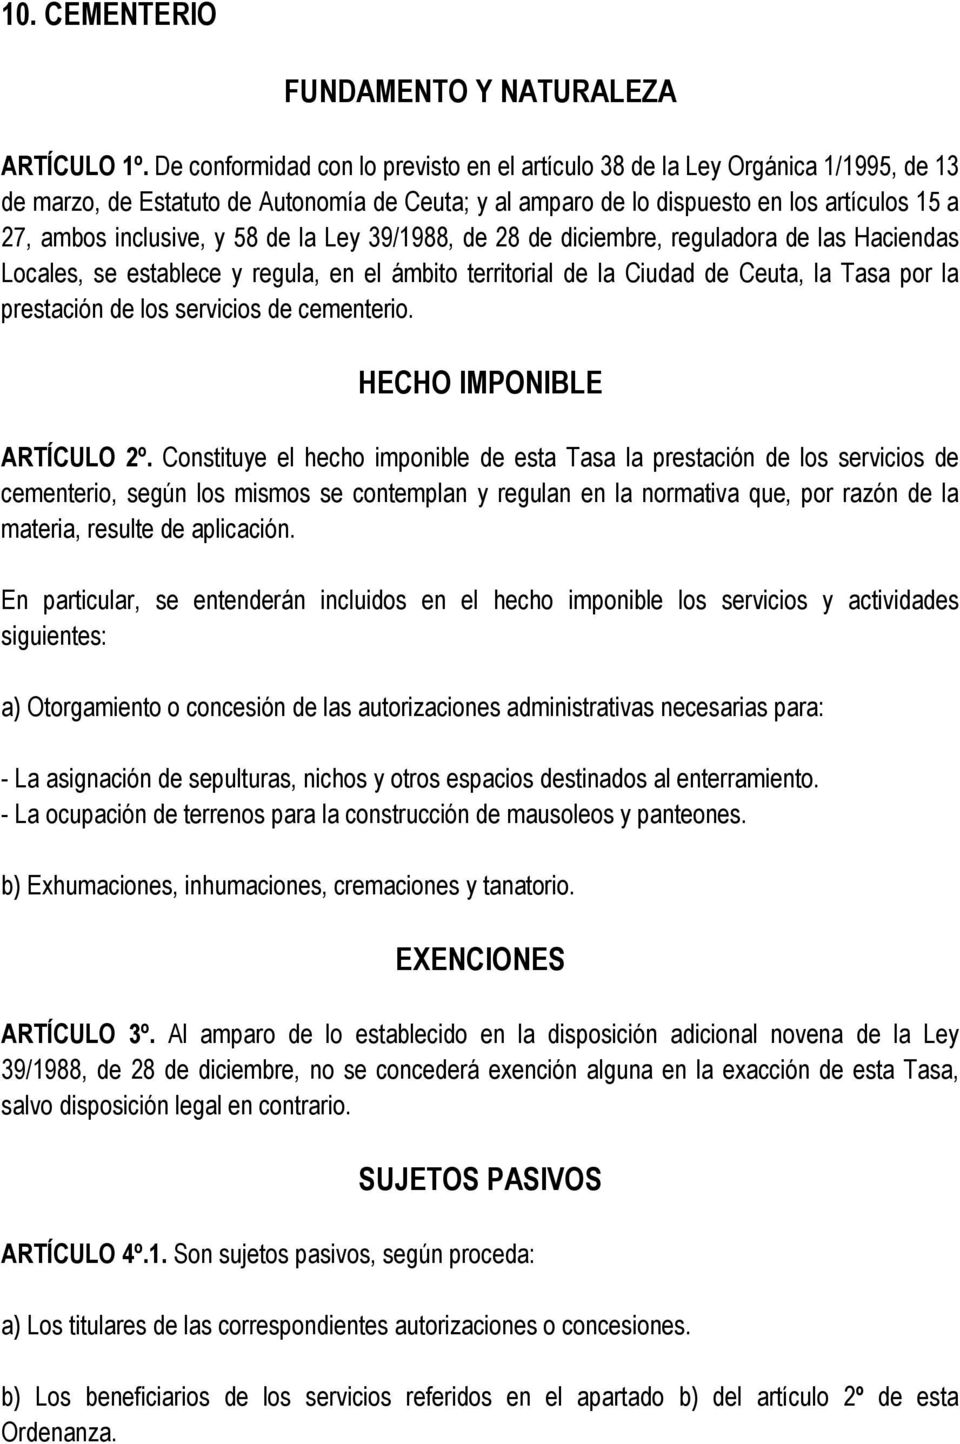 58 de la Ley 39/1988, de 28 de diciembre, reguladora de las Haciendas Locales, se establece y regula, en el ámbito territorial de la Ciudad de Ceuta, la Tasa por la prestación de los servicios de